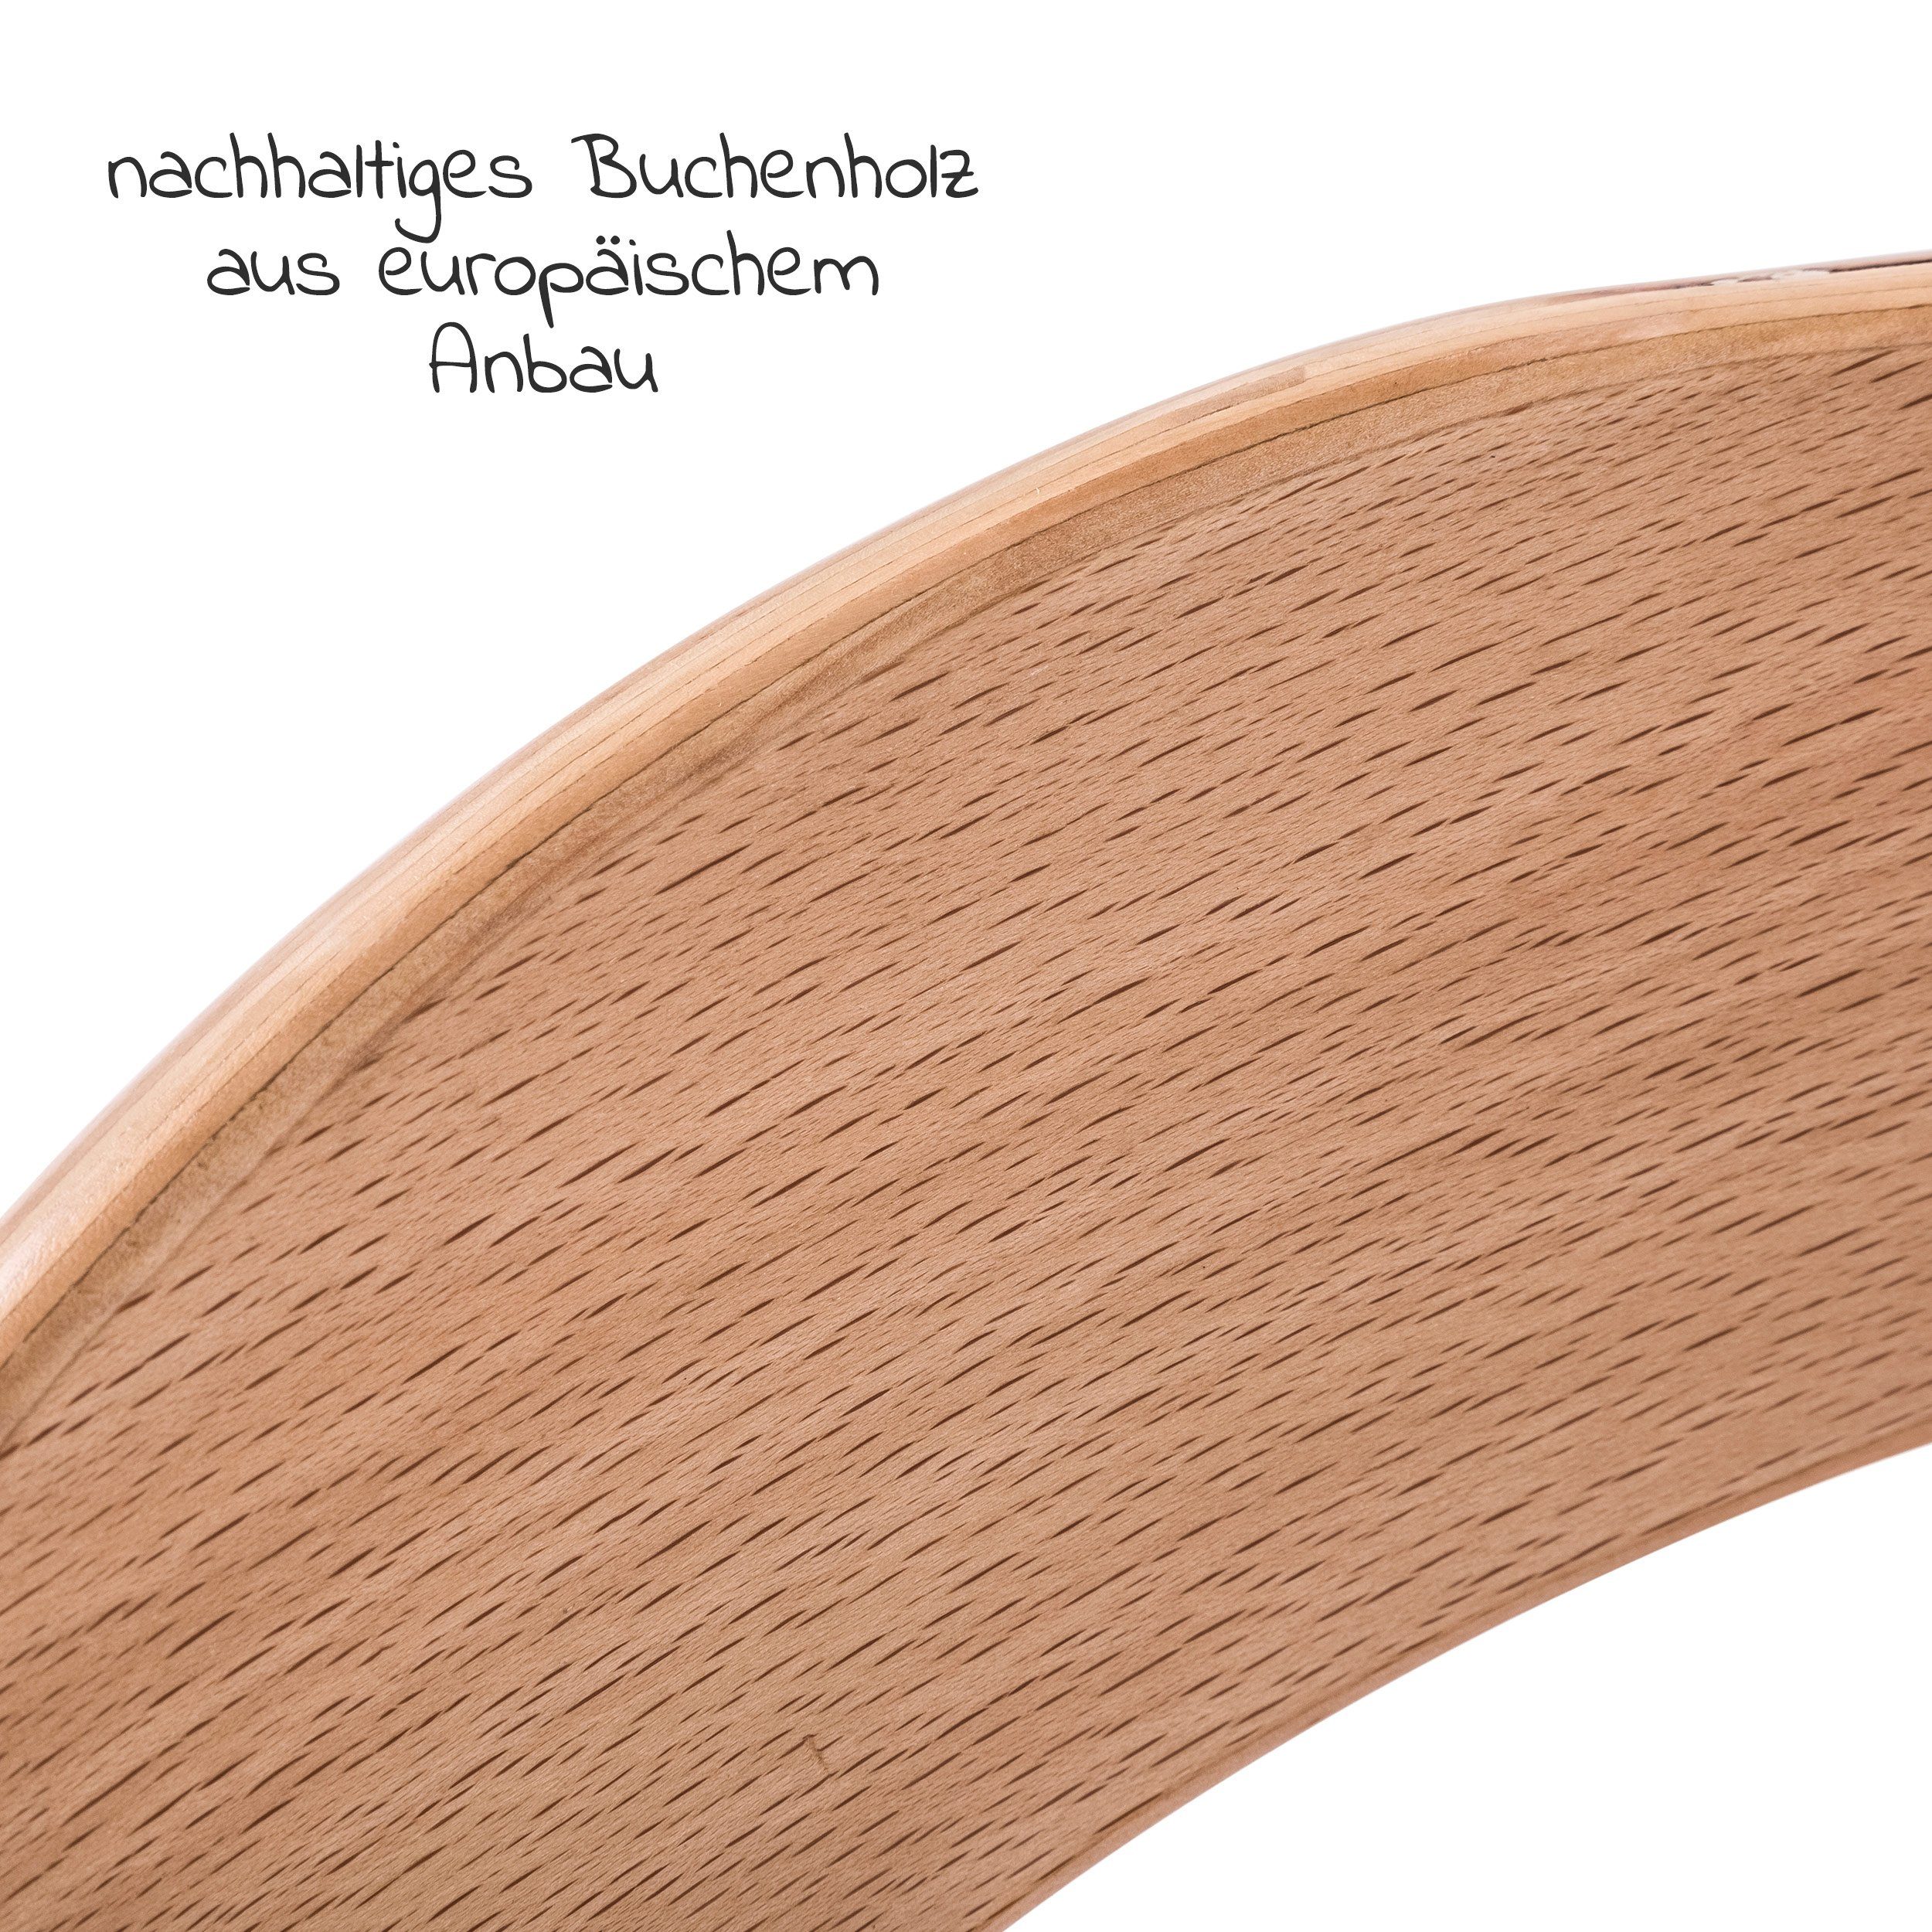 Hauck Kinderhochstuhl Holz Hochstuhl mit Alpha Hauck Sitzauflage Plus Mitwachsender Natur, höhenverstellbar